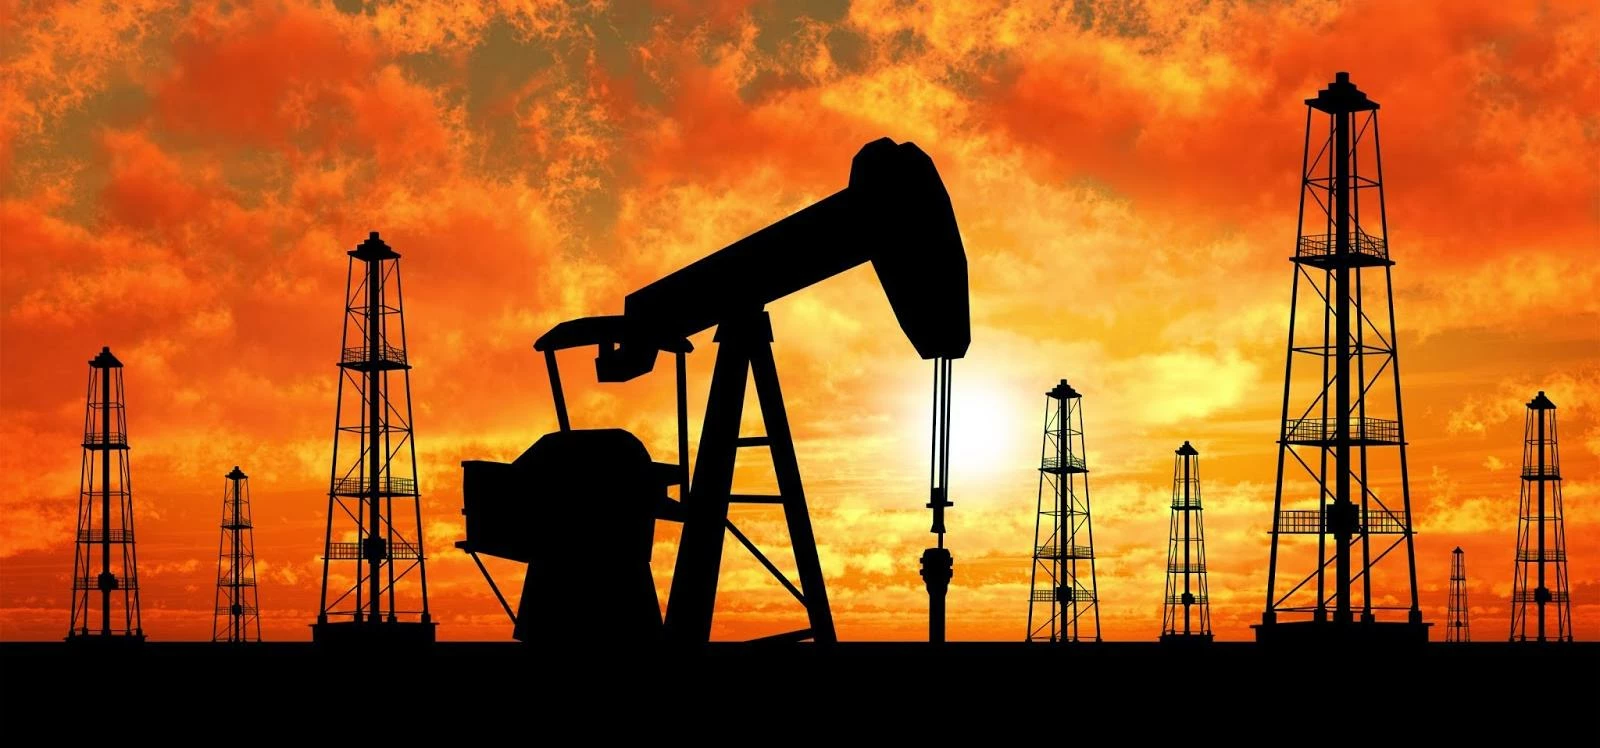 http://newsrepublica.com/opec-announced-fall-crude-oil-prices/